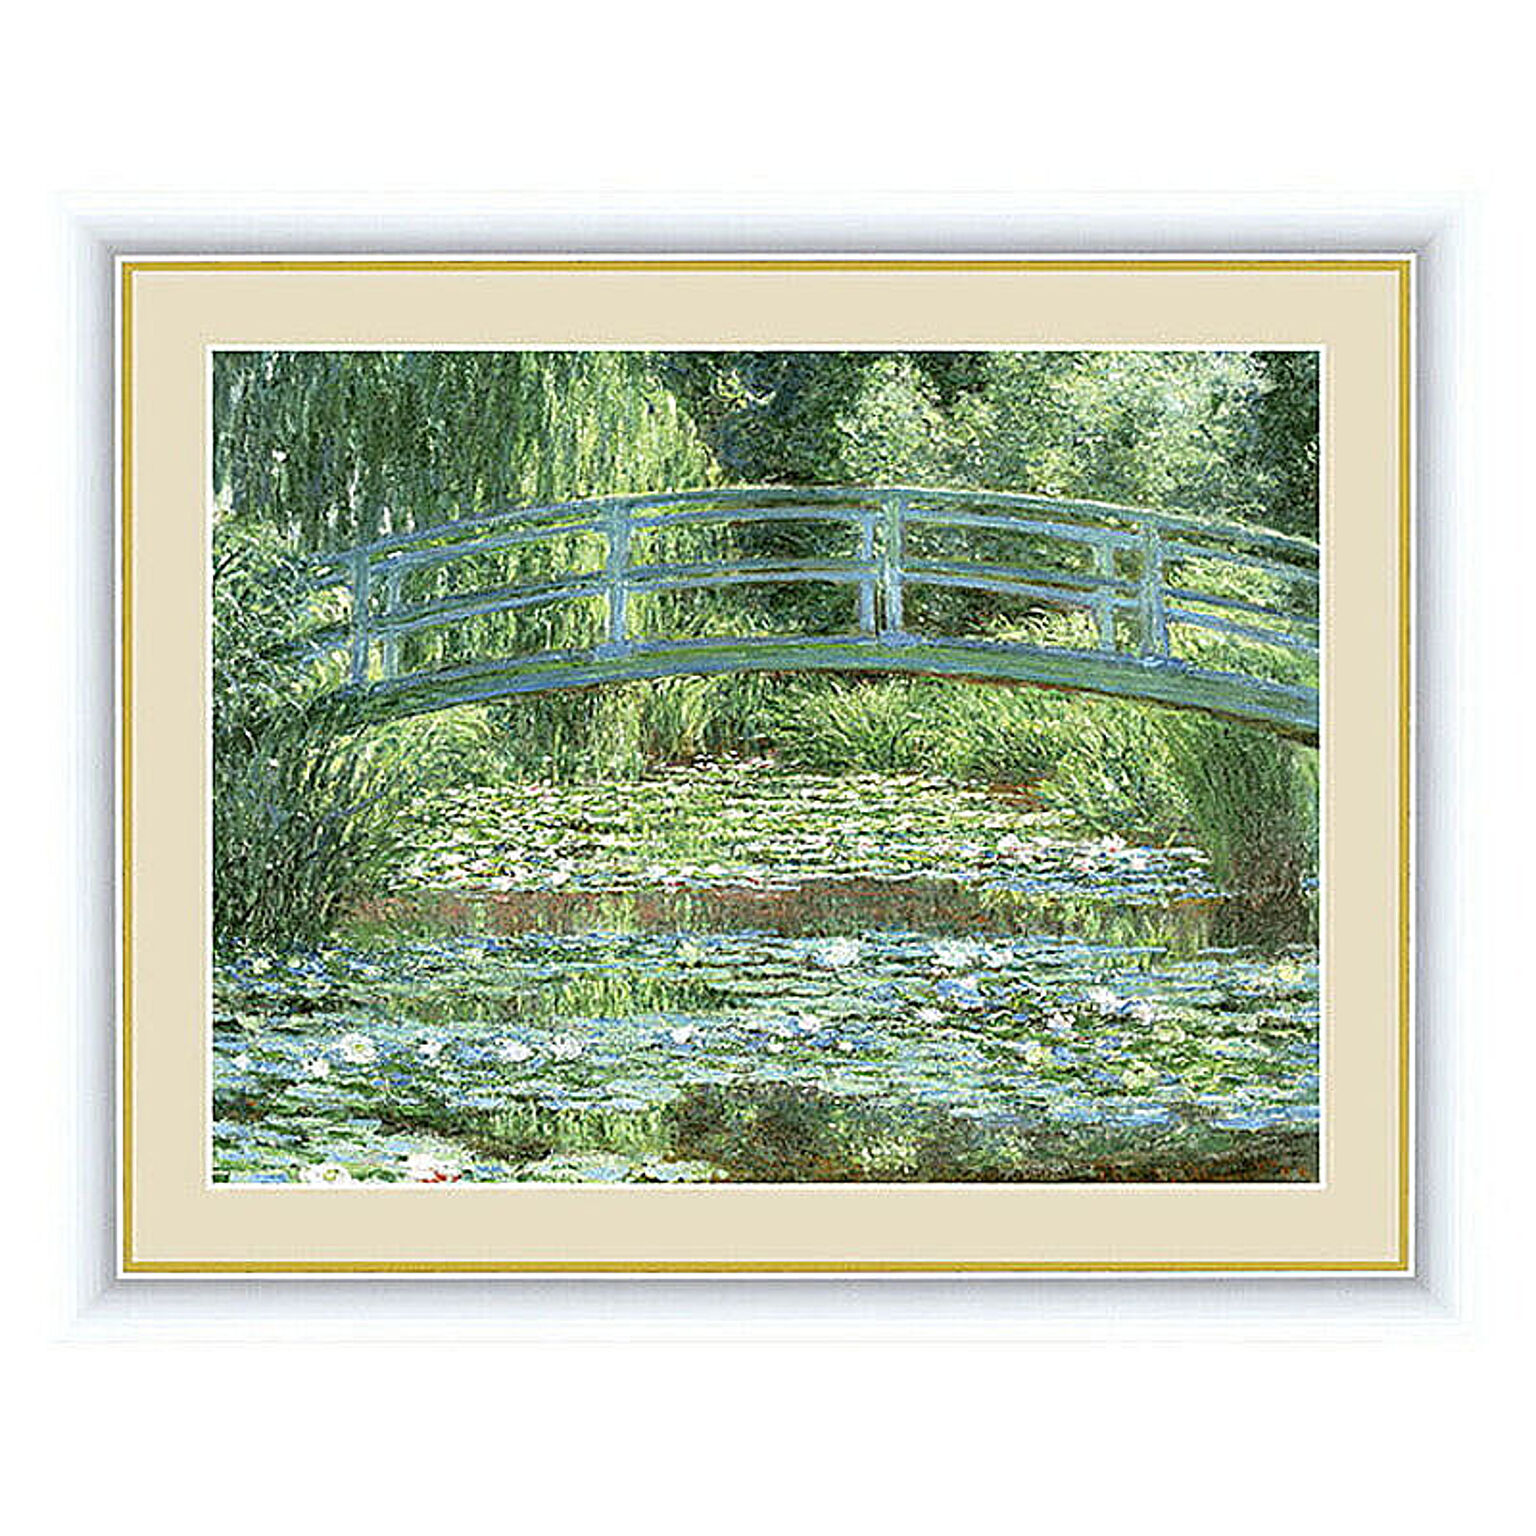 アート 額絵 睡蓮の池と日本の橋 モネ 本紙サイズ F6(約40x30cm) 額サイズ 52x42cm 三幸